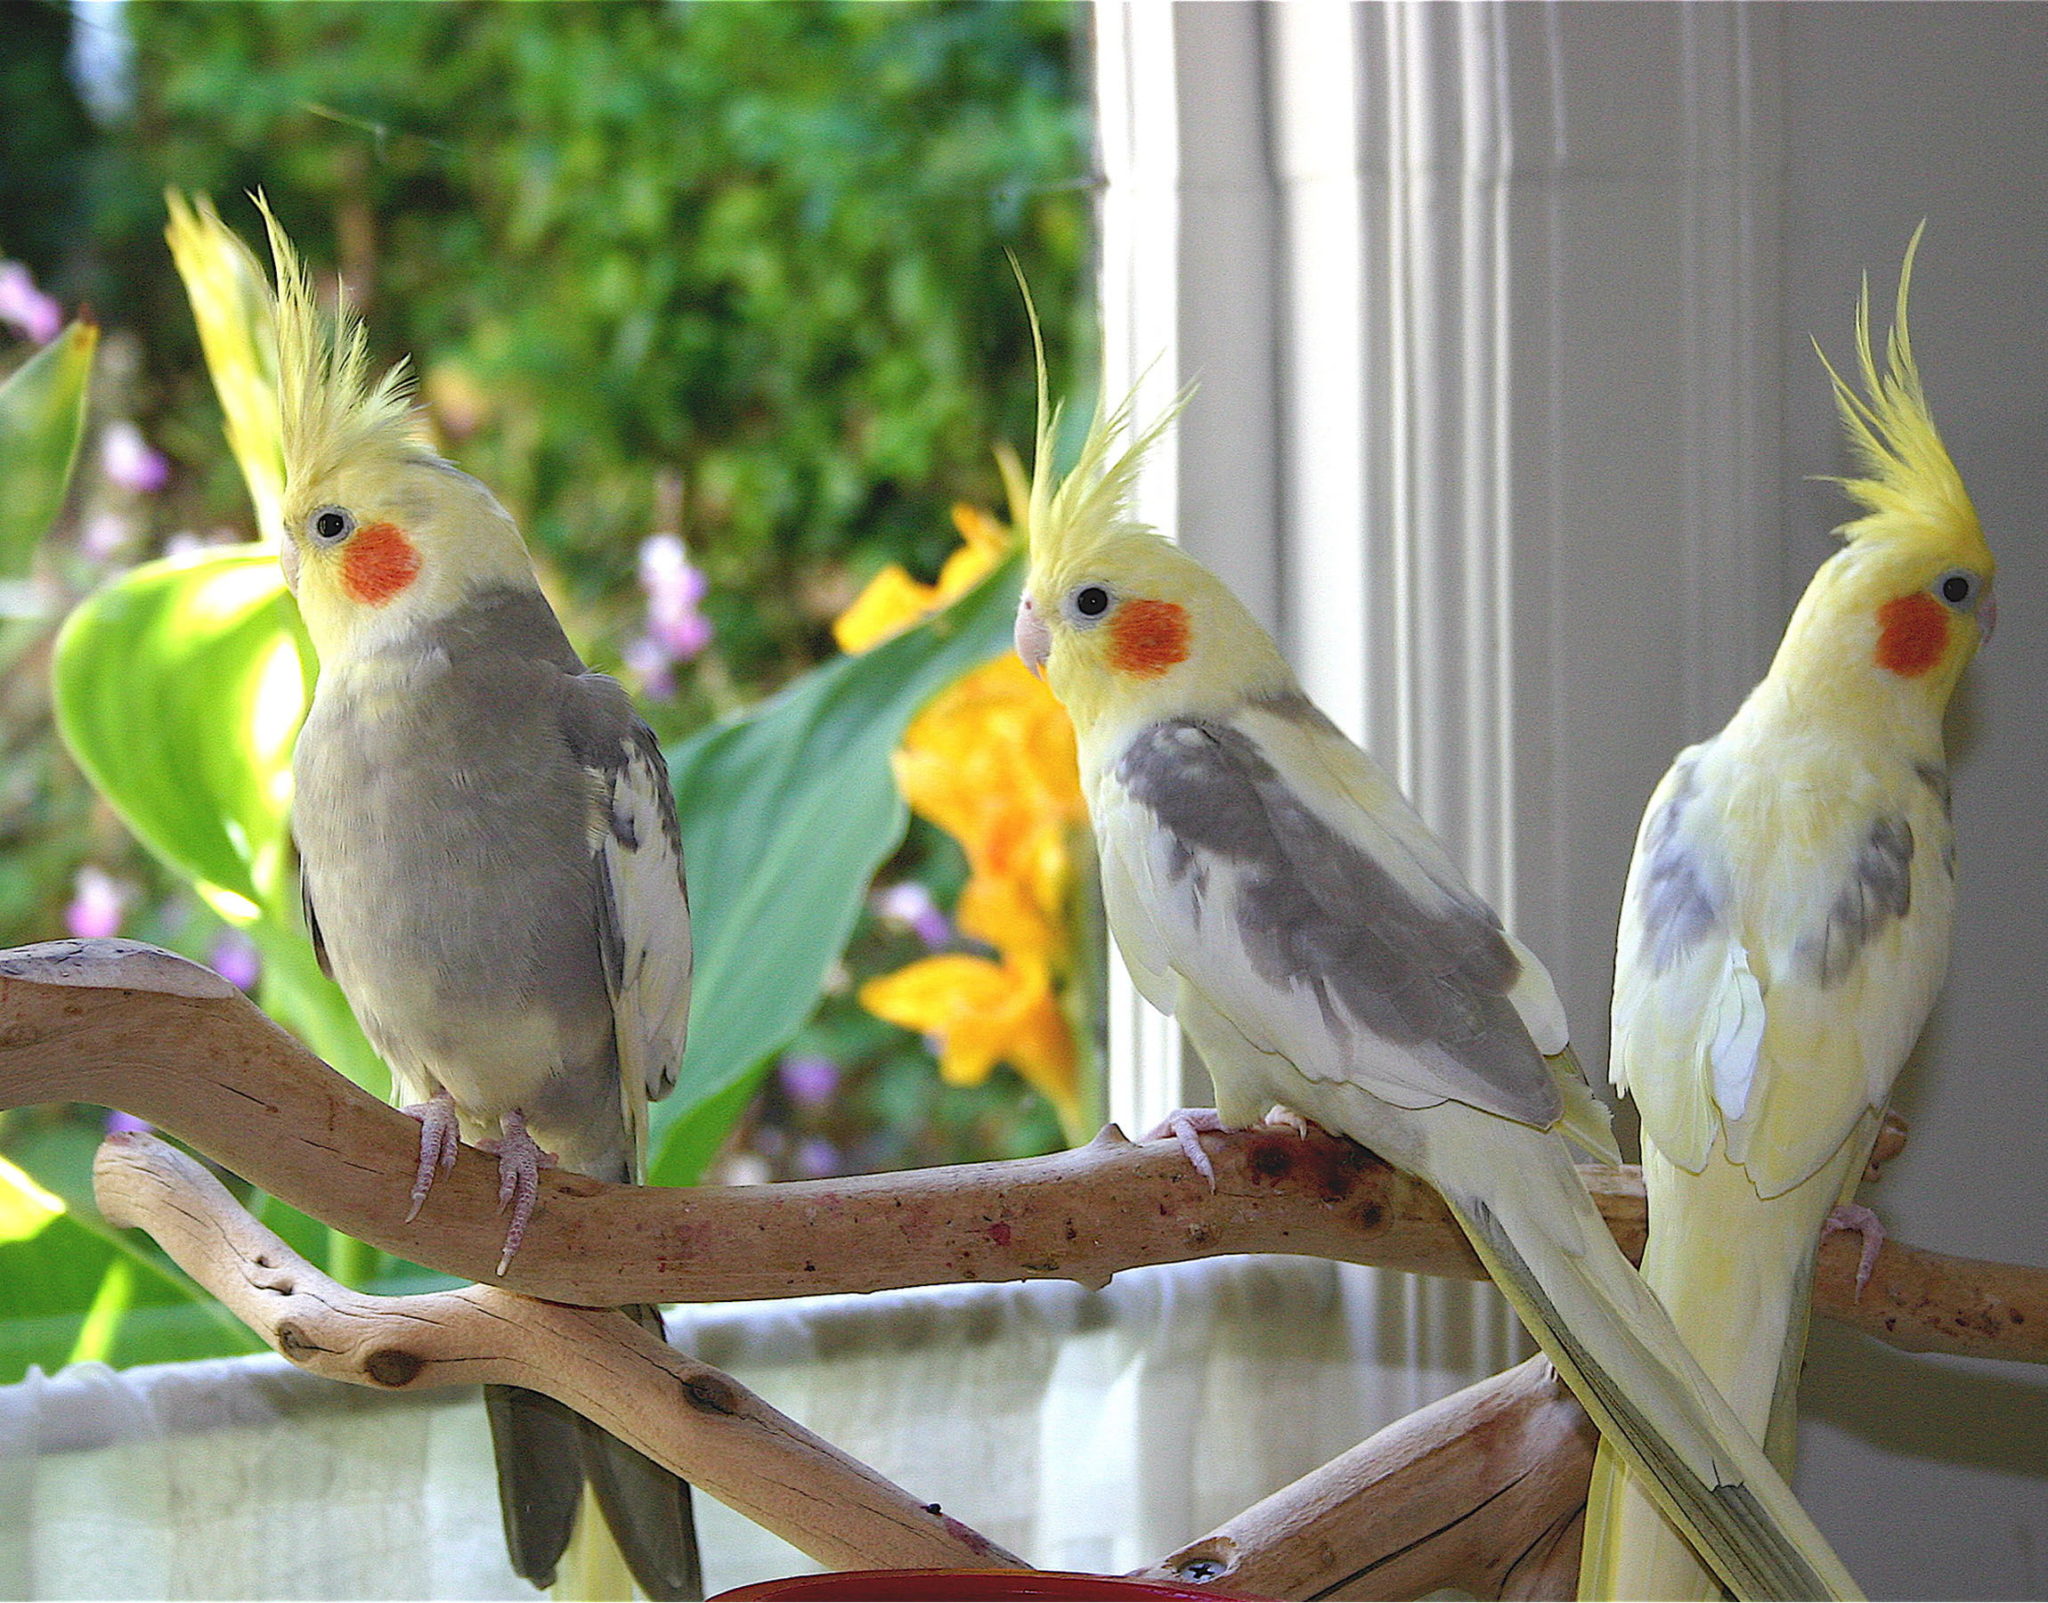 5385 2 انواع الطيور الزينة - تعرف على عصافير الزينة بانواعها المختلفة نقاء علي